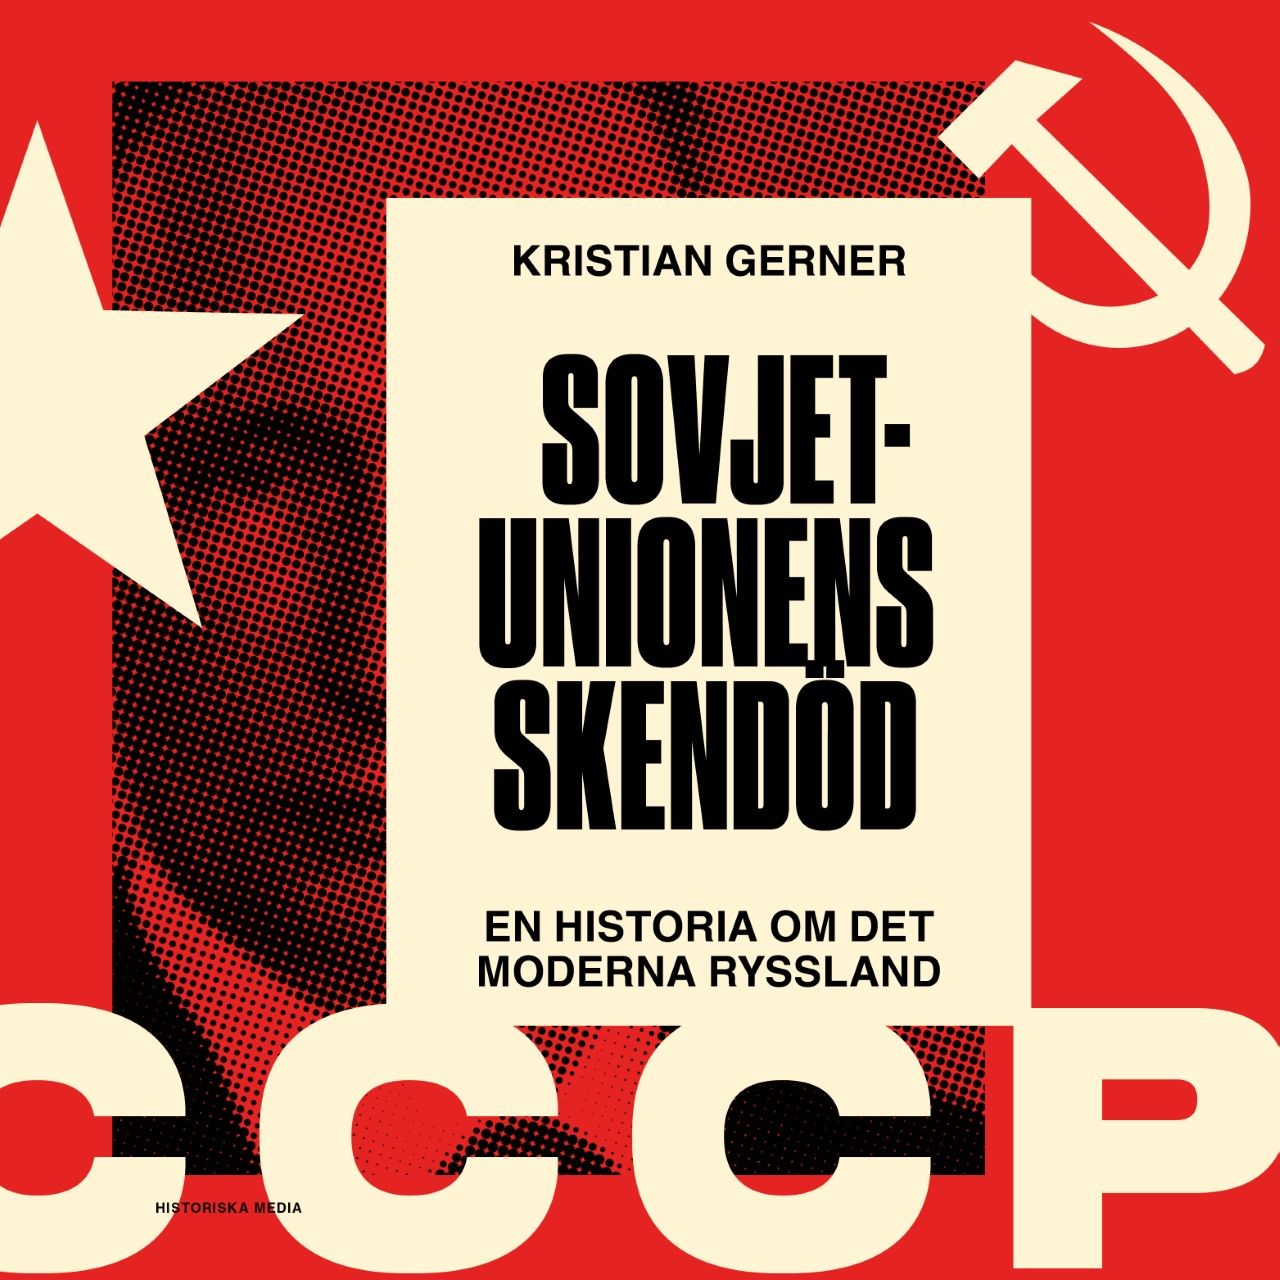 Sovjetunionens skendöd. En historia om det moderna Ryssland, ljudbok av Kristian Gerner